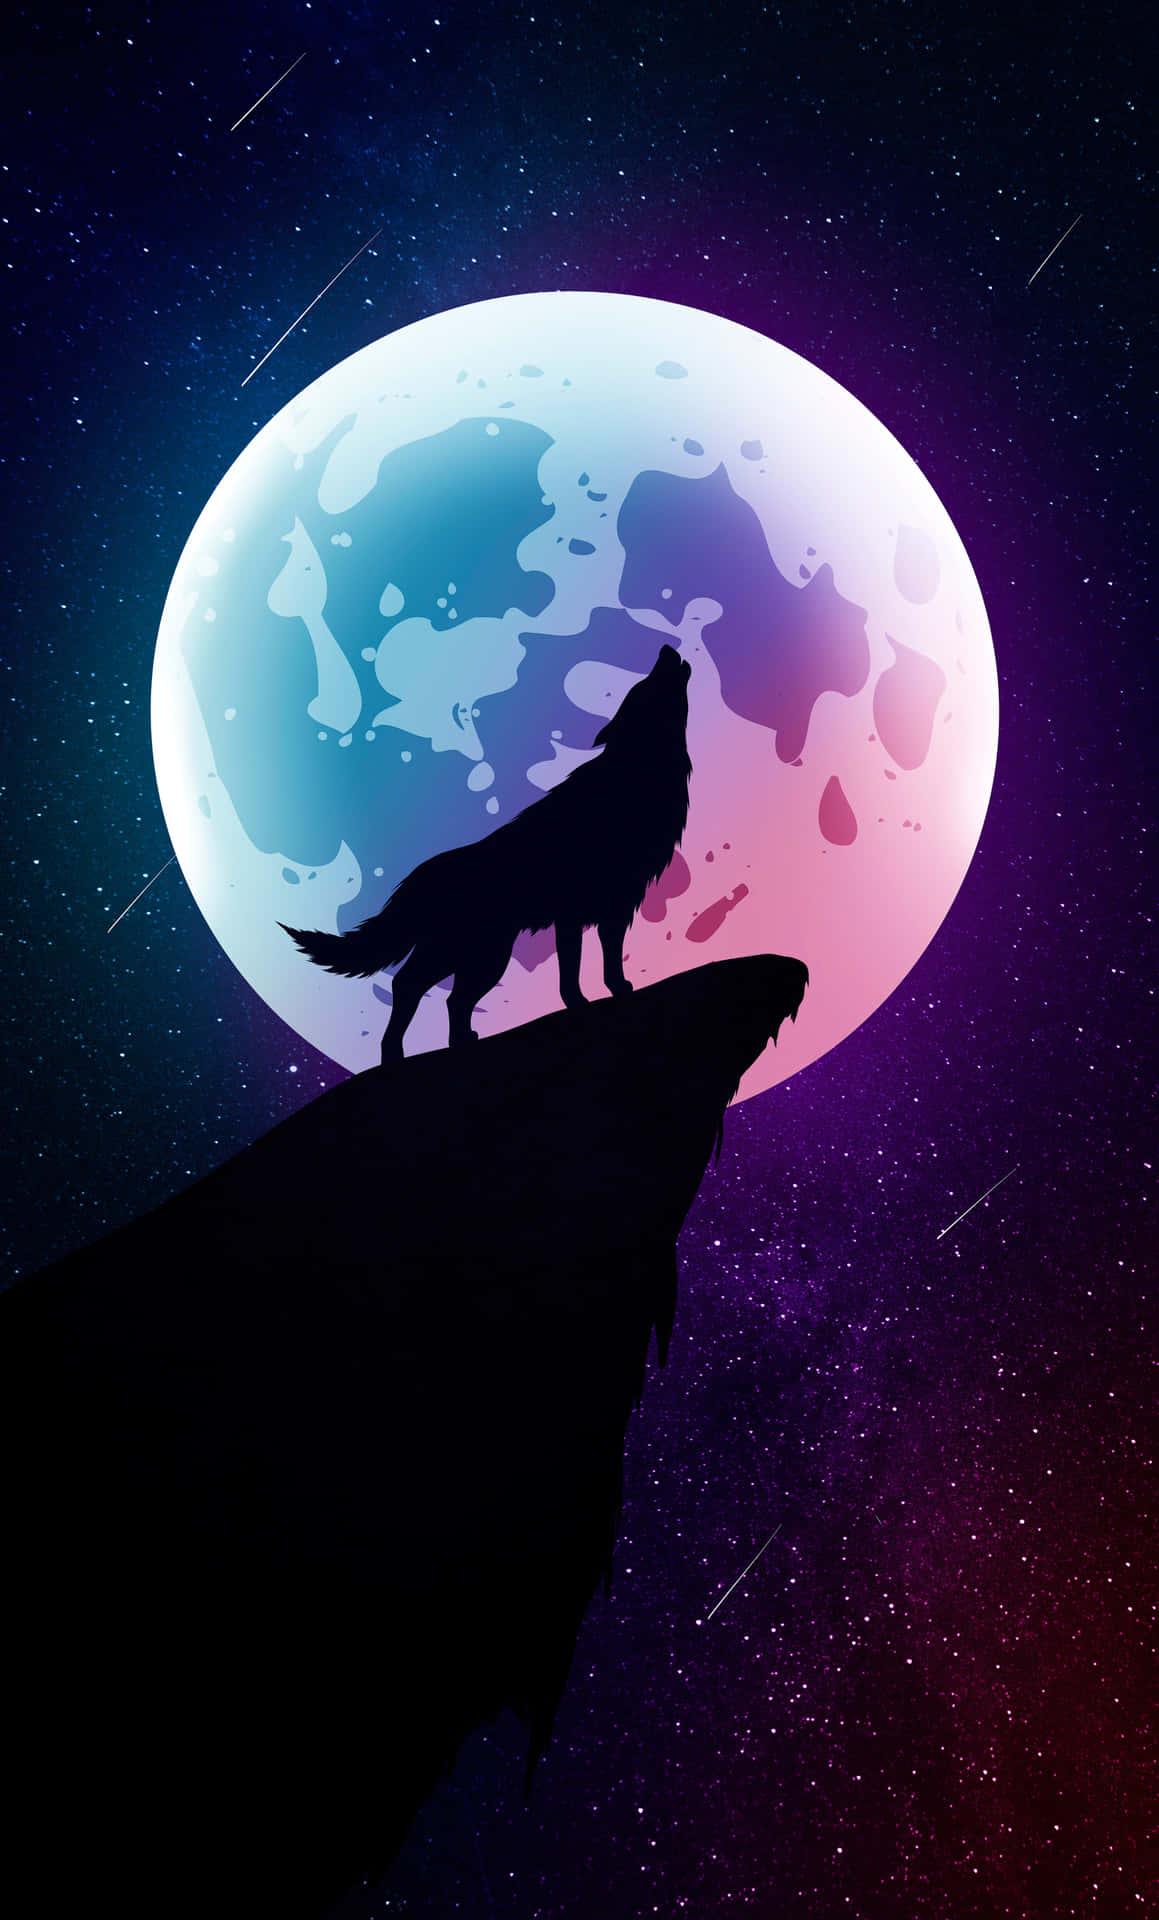 Bộ sưu tập ảnh nền với chủ đề sói và trăng lưỡi liềm sẽ mang đến cho bạn sự bí ẩn nhưng cũng không kém phần quyến rũ. Bạn sẽ hóa thân vào một thế giới đầy cảm xúc và khác biệt.